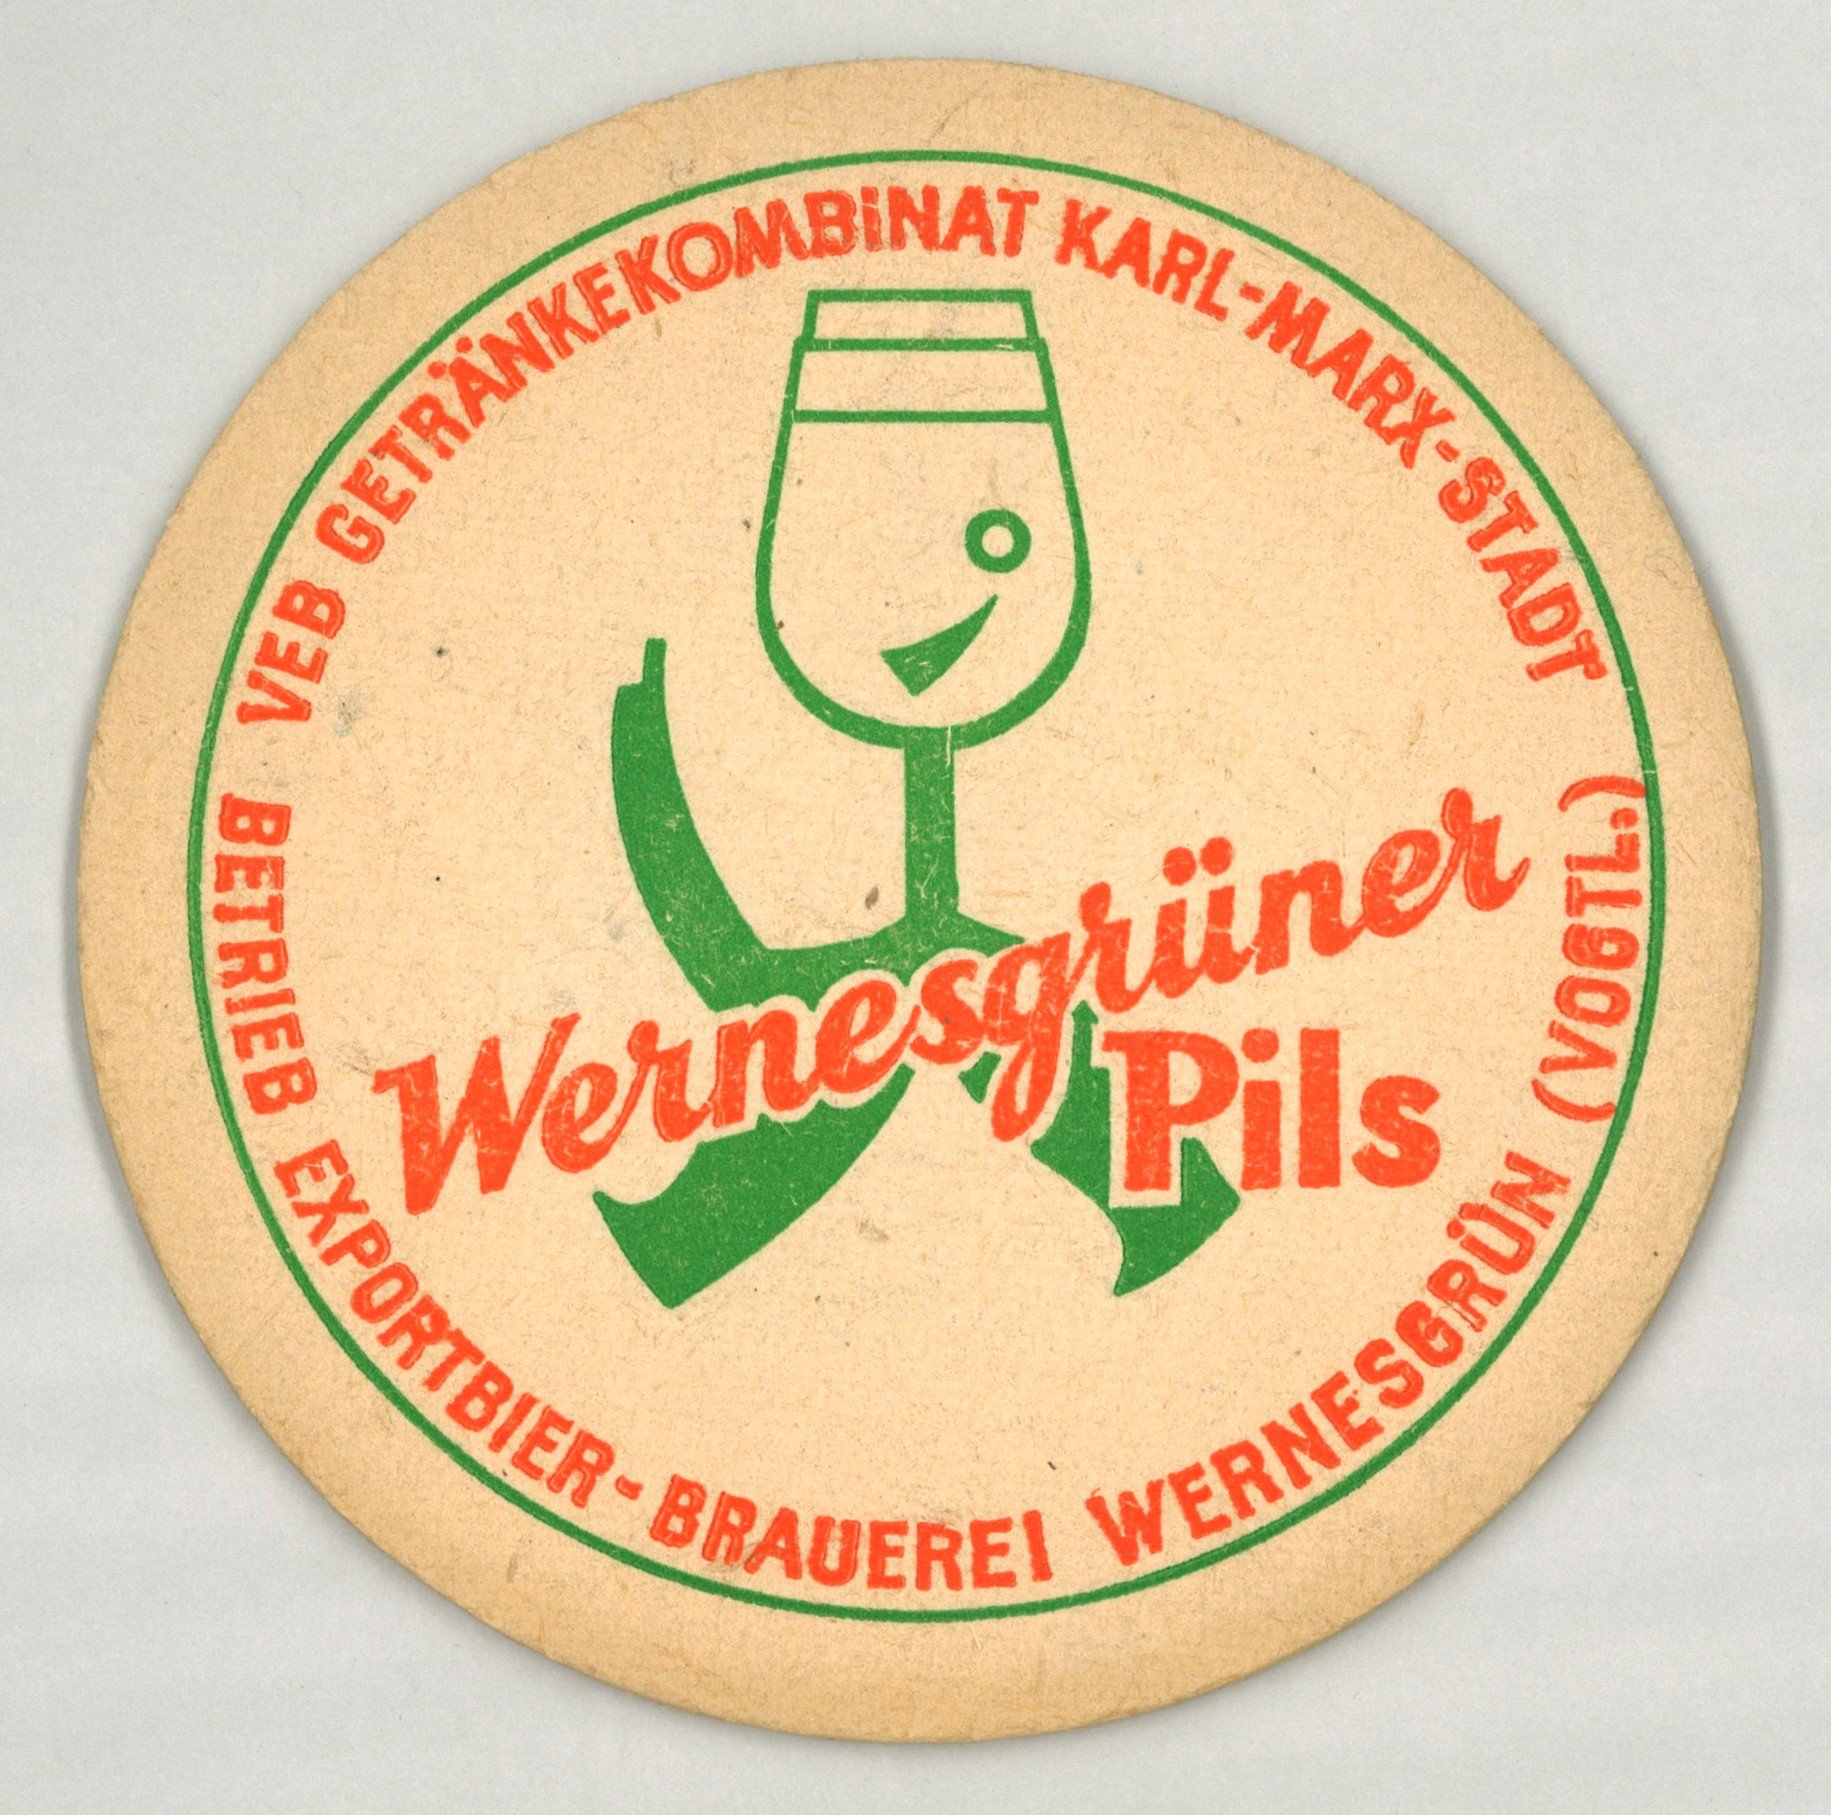 Wernesgrün (Vogtl.): Exportbier-Brauerei Wernesgrün (Vogtl.) (Landesgeschichtliche Vereinigung für die Mark Brandenburg e.V., Archiv CC BY)